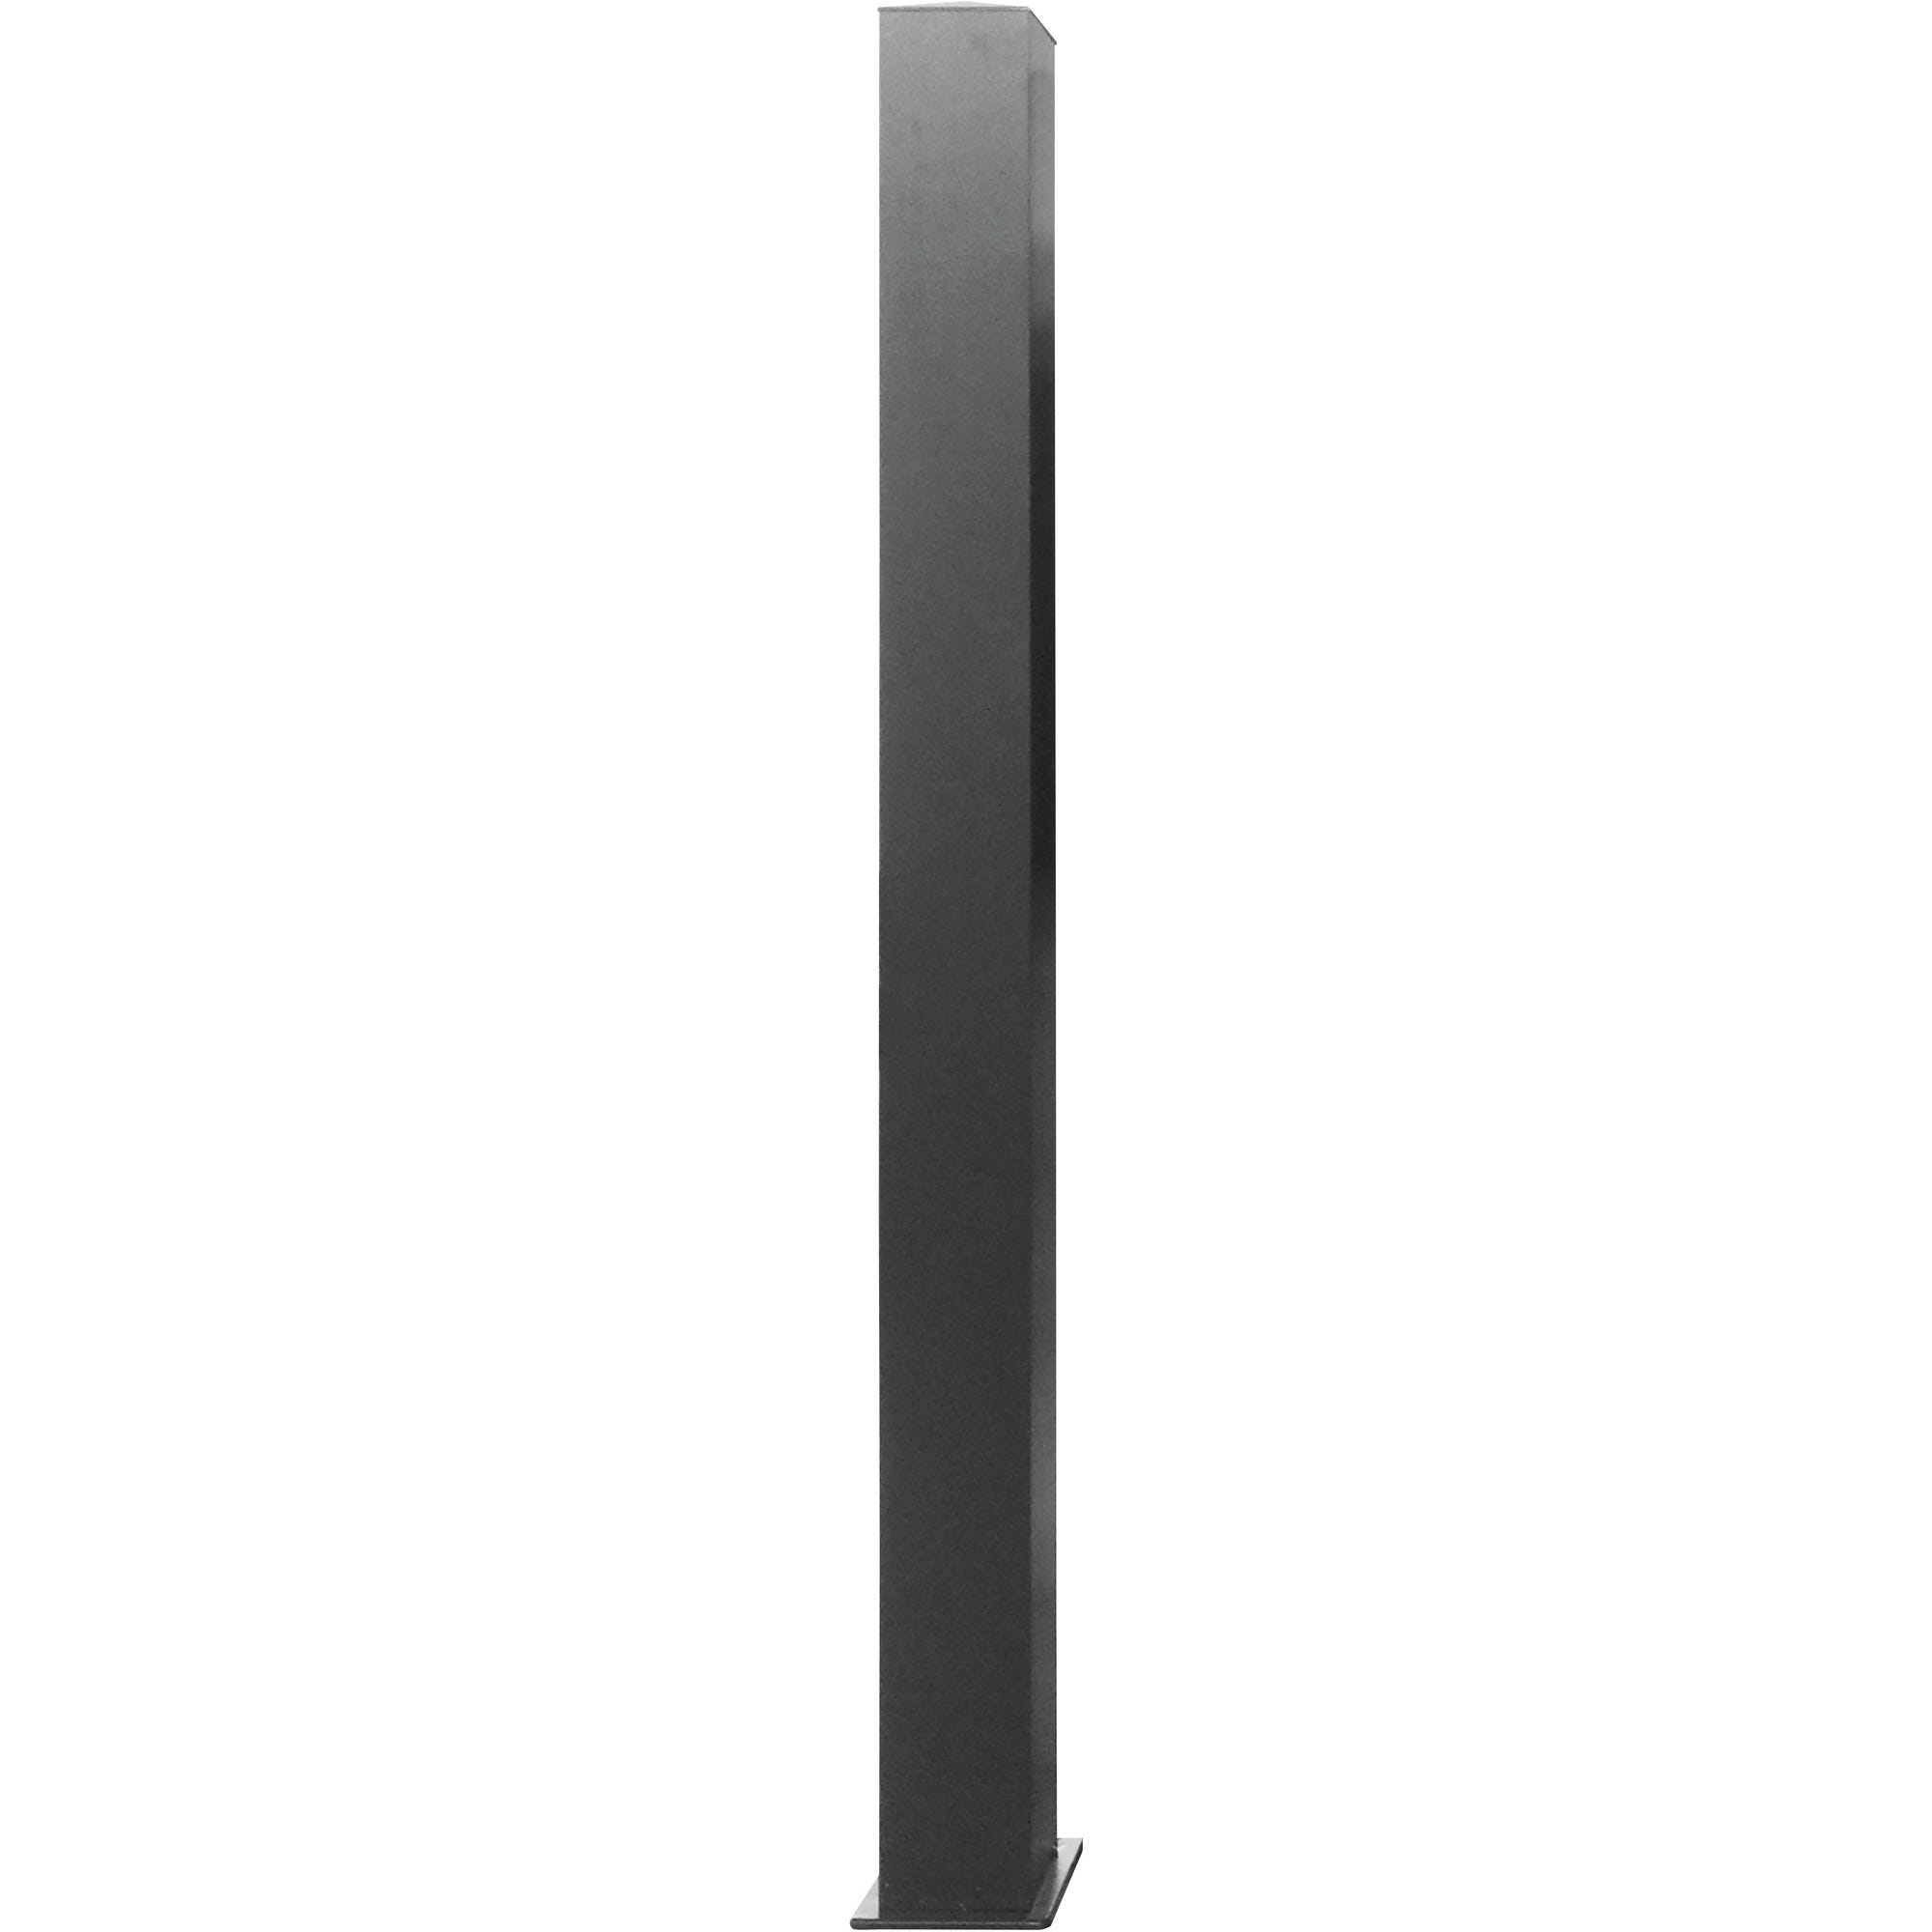 Poteau aluminium noir pour portail complet, 15 x 15 x 210 cm Ep.2 mm 0